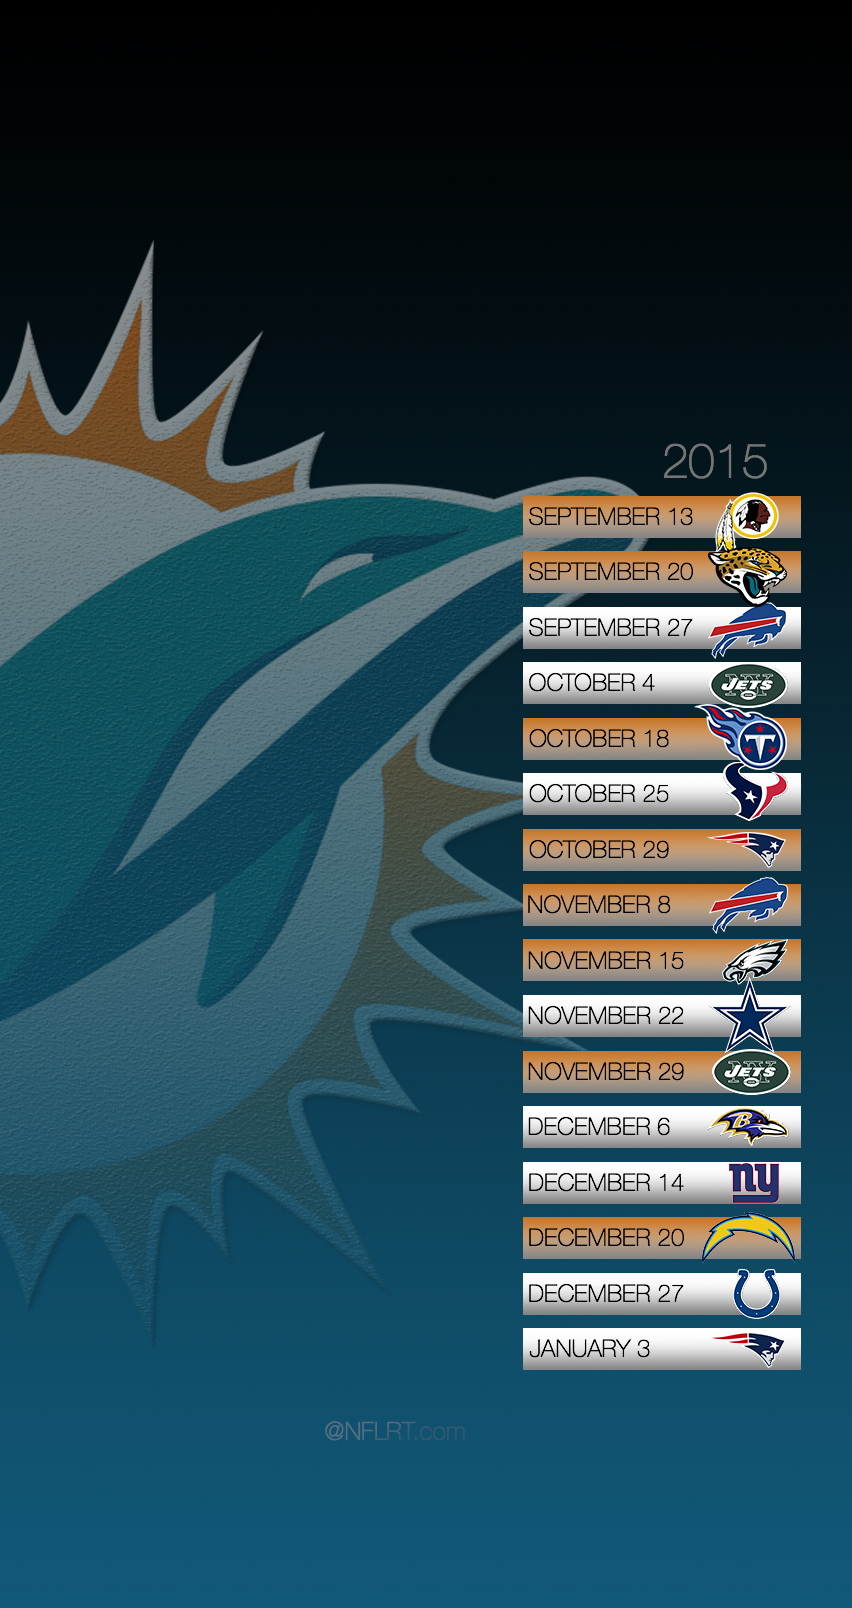 2015 NFL Schedule Wallpapers - @NFLRT